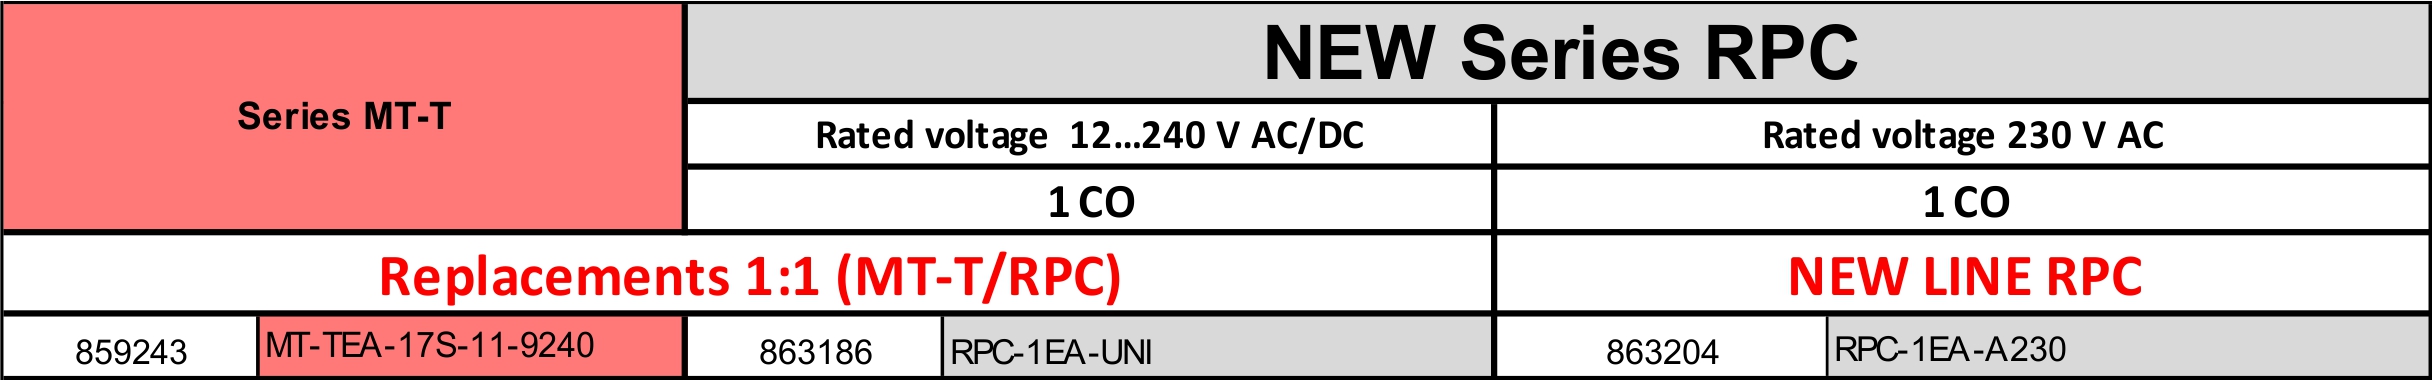 eRPC-EA